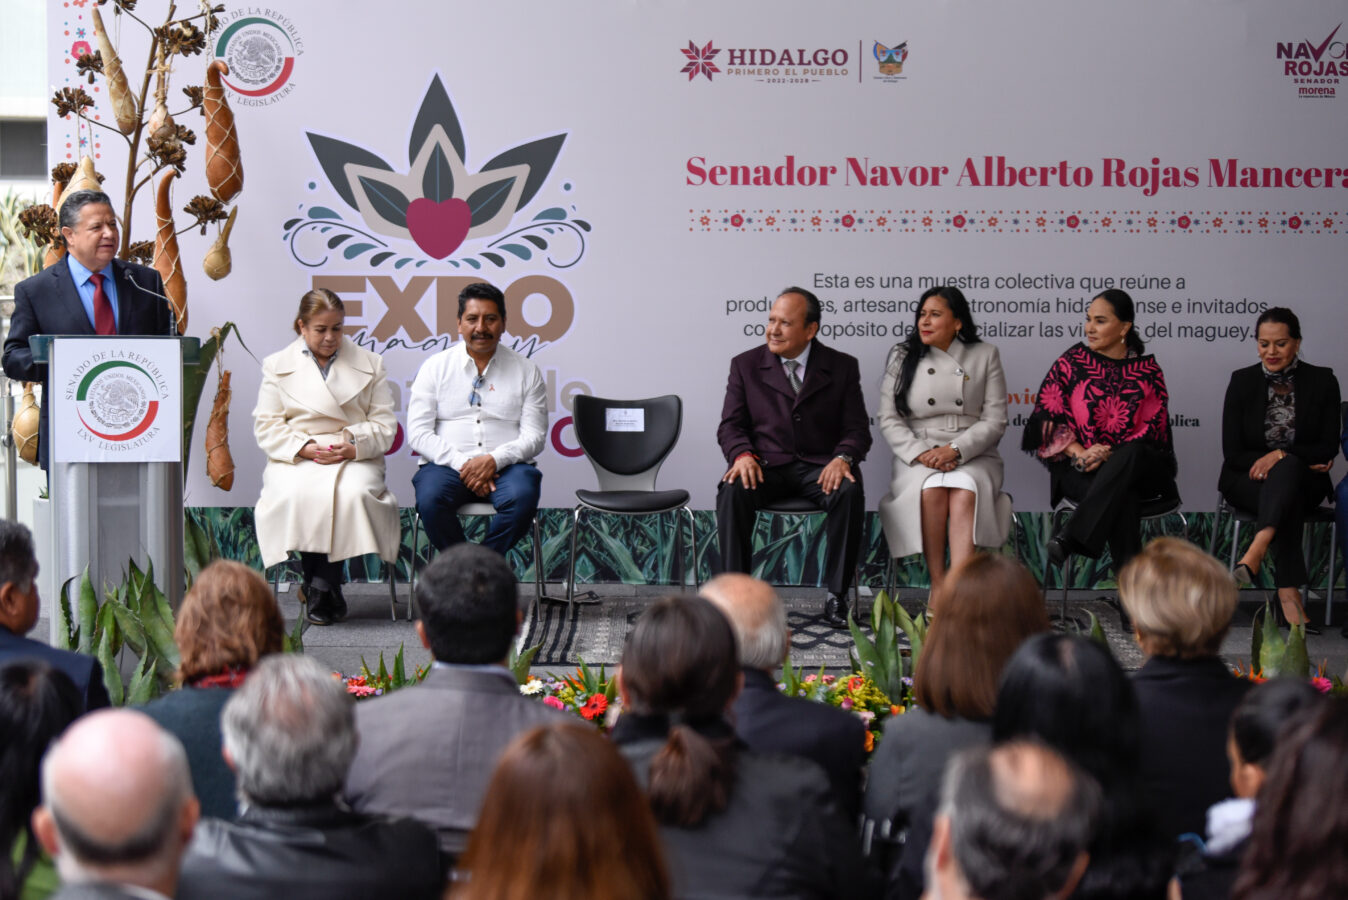 Llega expo “Maguey, Corazón de Hidalgo” al Senado 